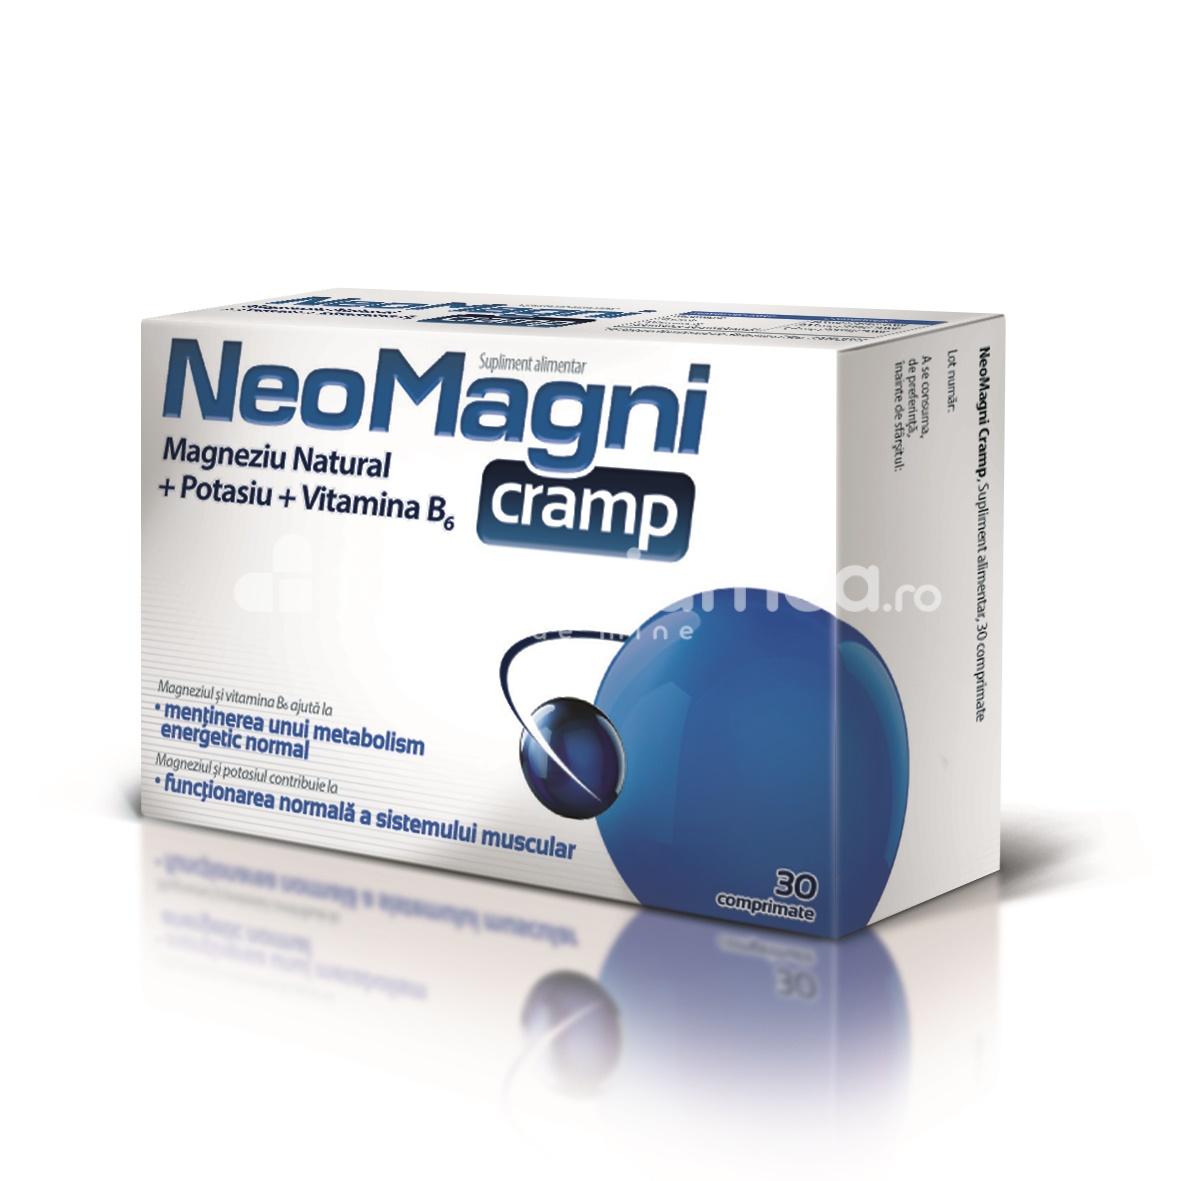 Anticârcel - Aflofarm NeoMagni Cramp, 30 comprimate, farmaciamea.ro